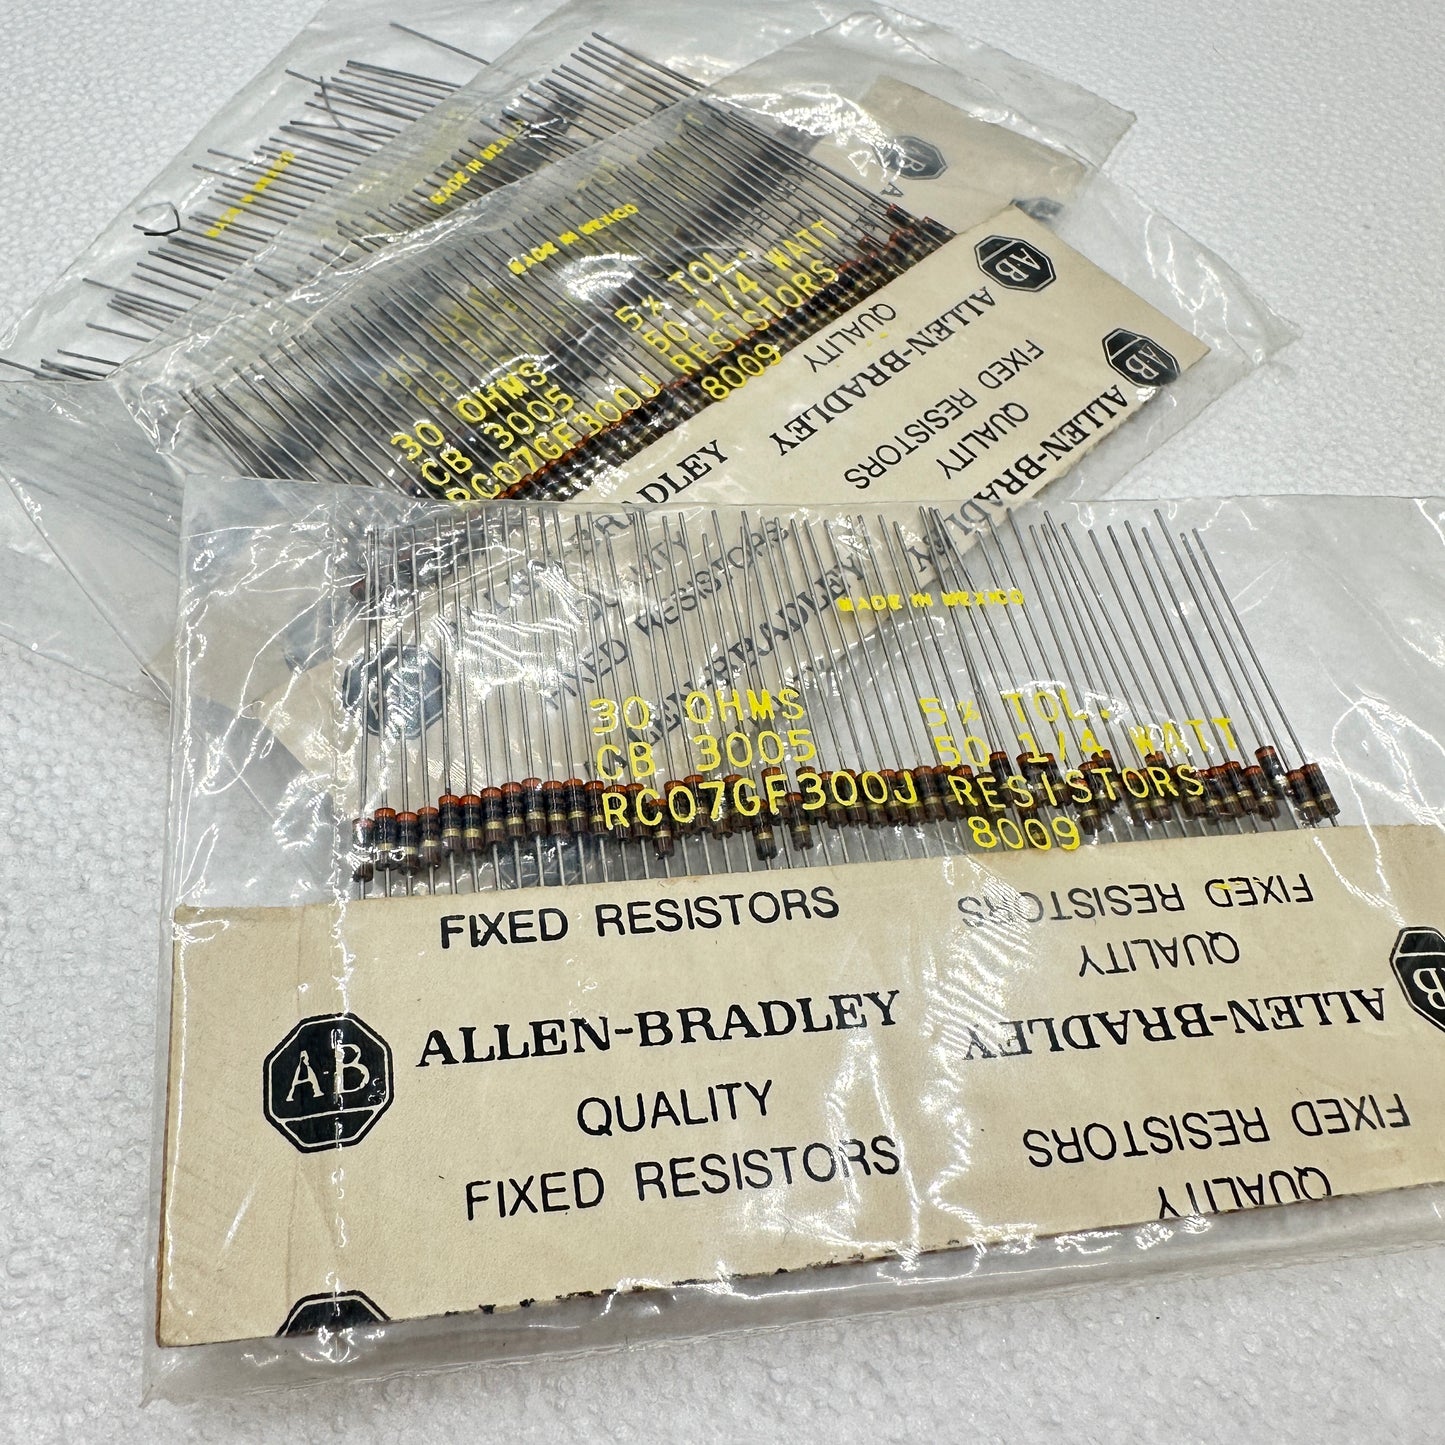 50 PACK Allen Bradley RC07 - MULTIPLE VALUES 1/4w Carbon Comp Resistors